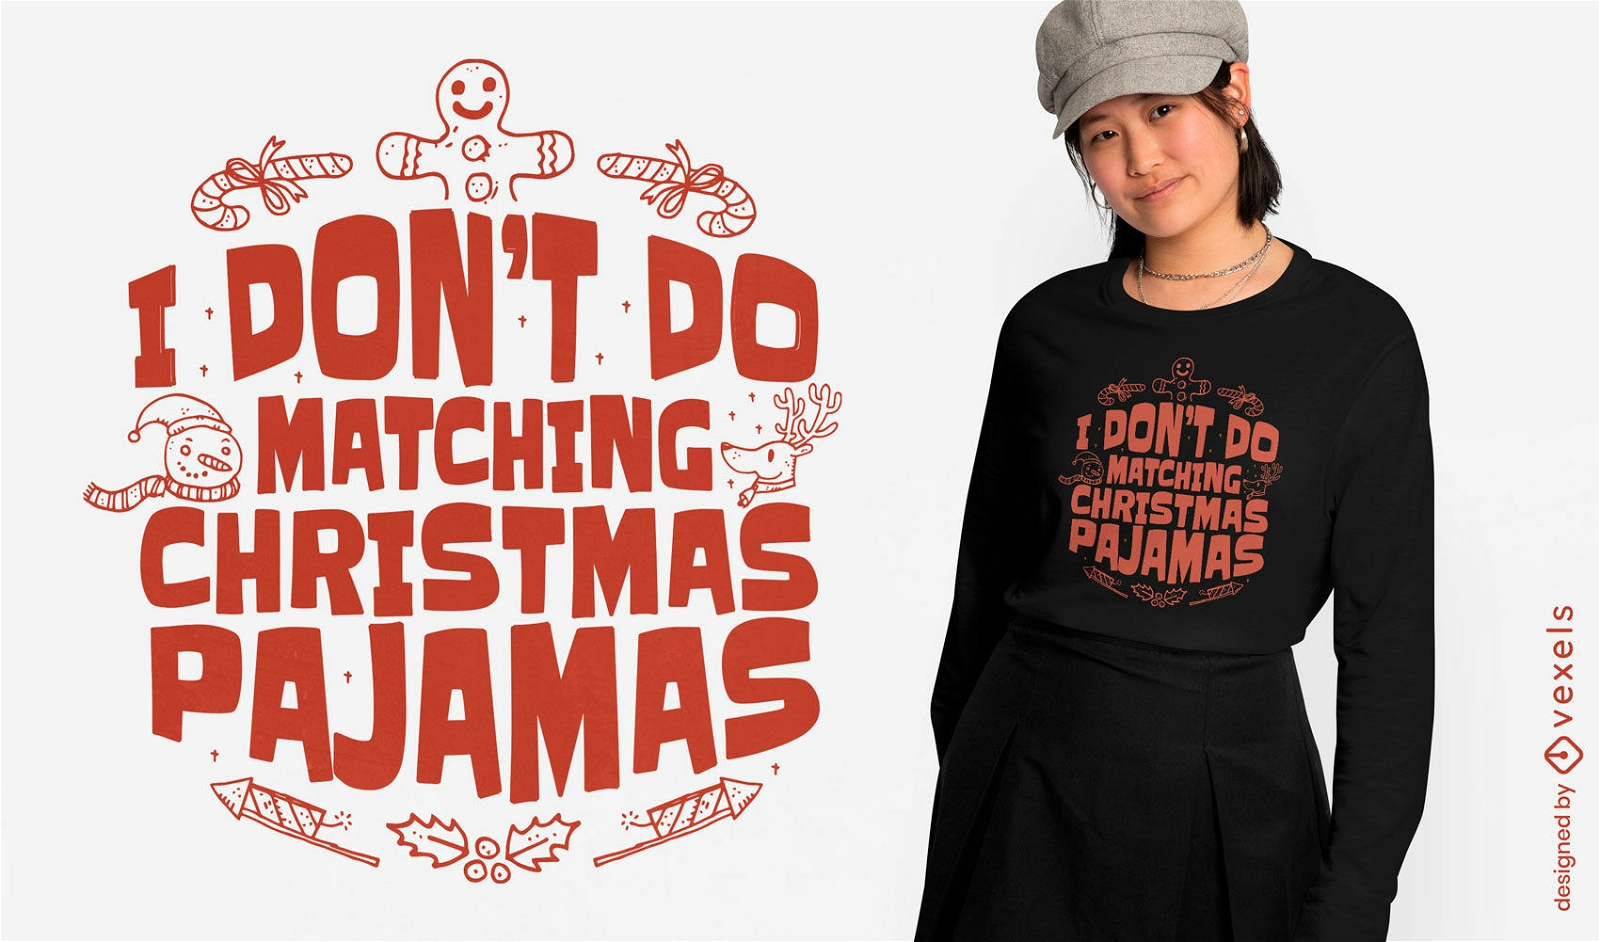 Anti-matching pajamas t-shirt design